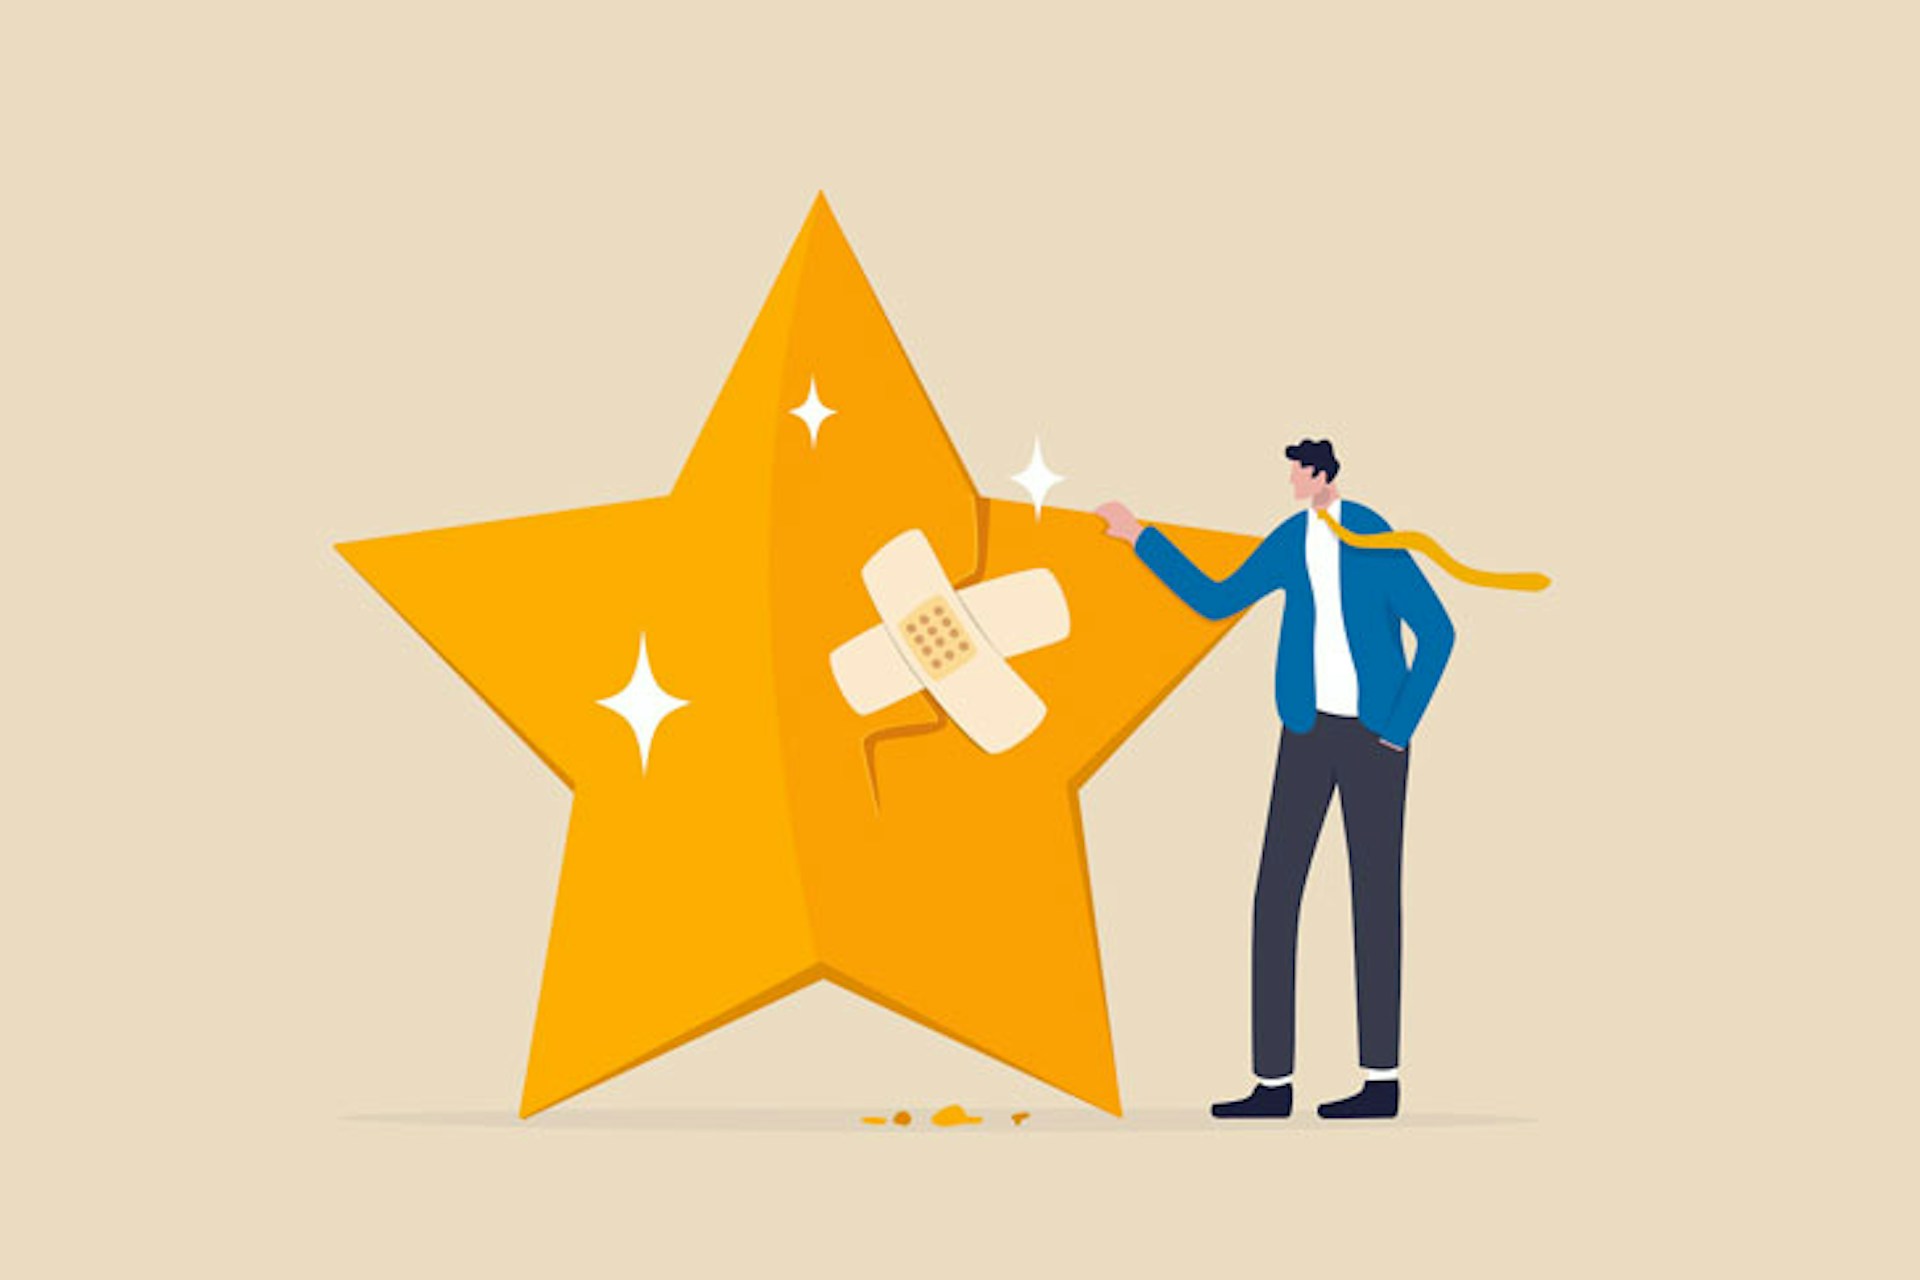 Eine Illustrtion zeigt einen goldenen Stern mit einem Pflaster, daneben steht ein Mann. Die Grafik symbolisiert den Begriff Krisenmanagement.